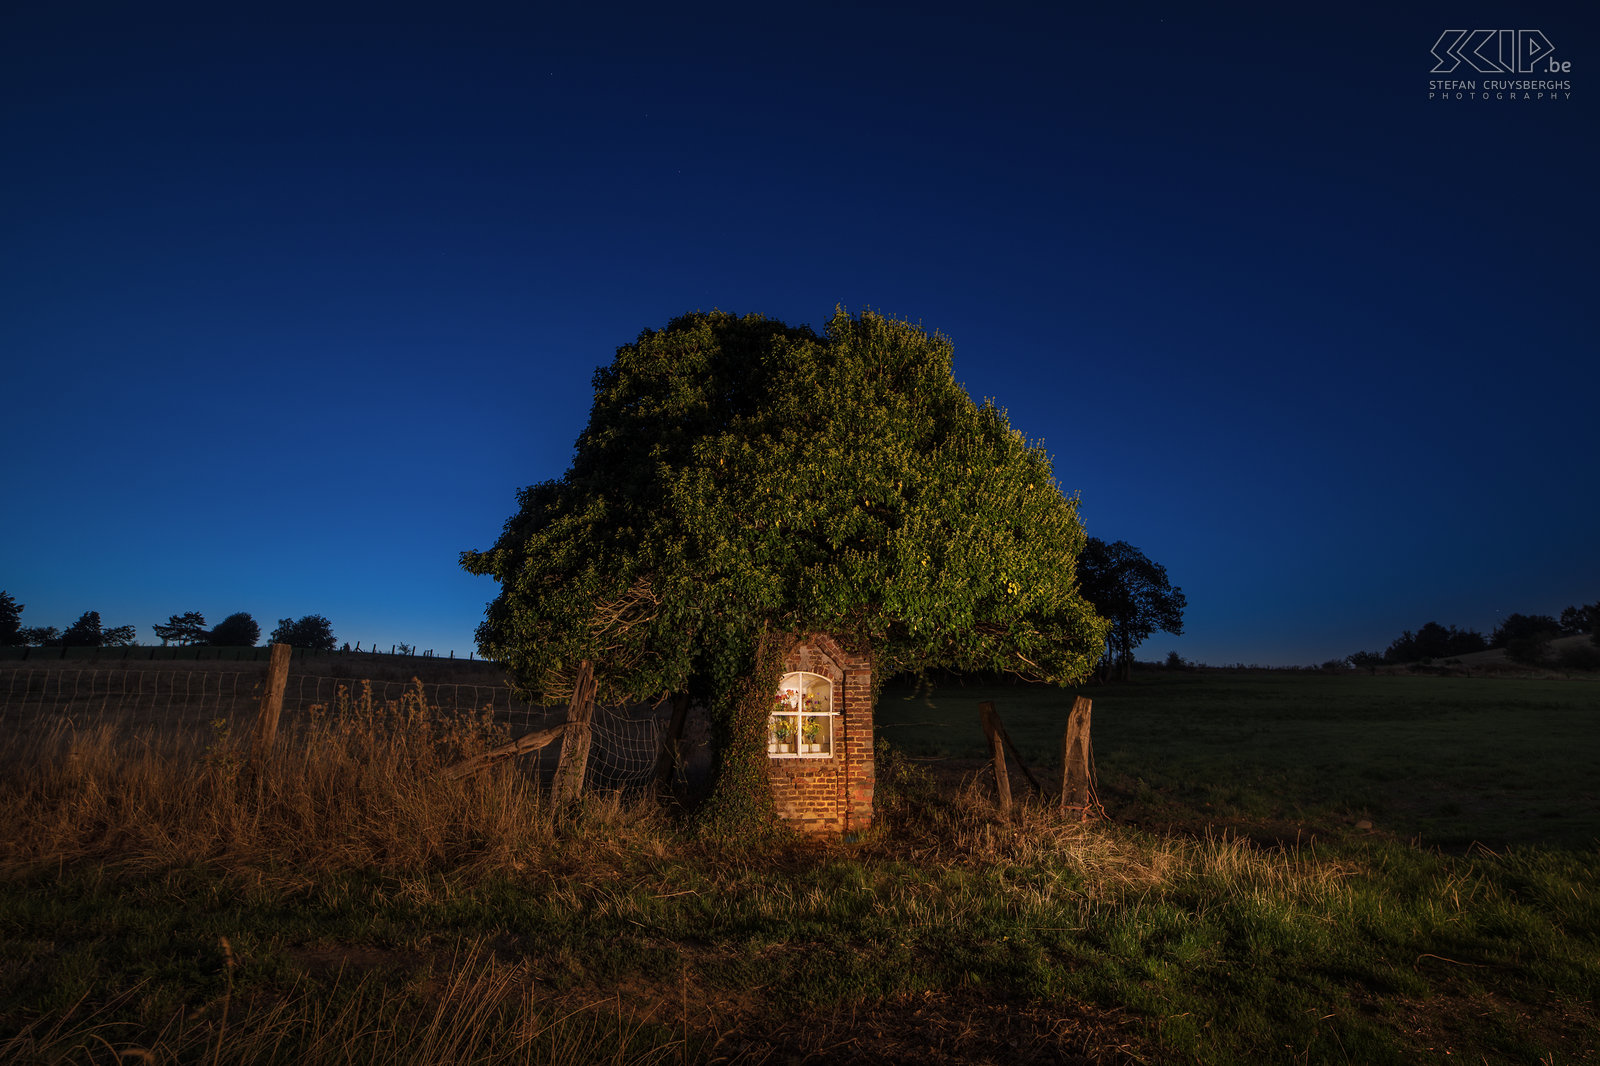 Hageland by night - Prinsenbos kapel in Bekkevoort Het kleine Prinsenbos kapelletje onder een boom op de grens van Diest en Bekkevoort. Stefan Cruysberghs